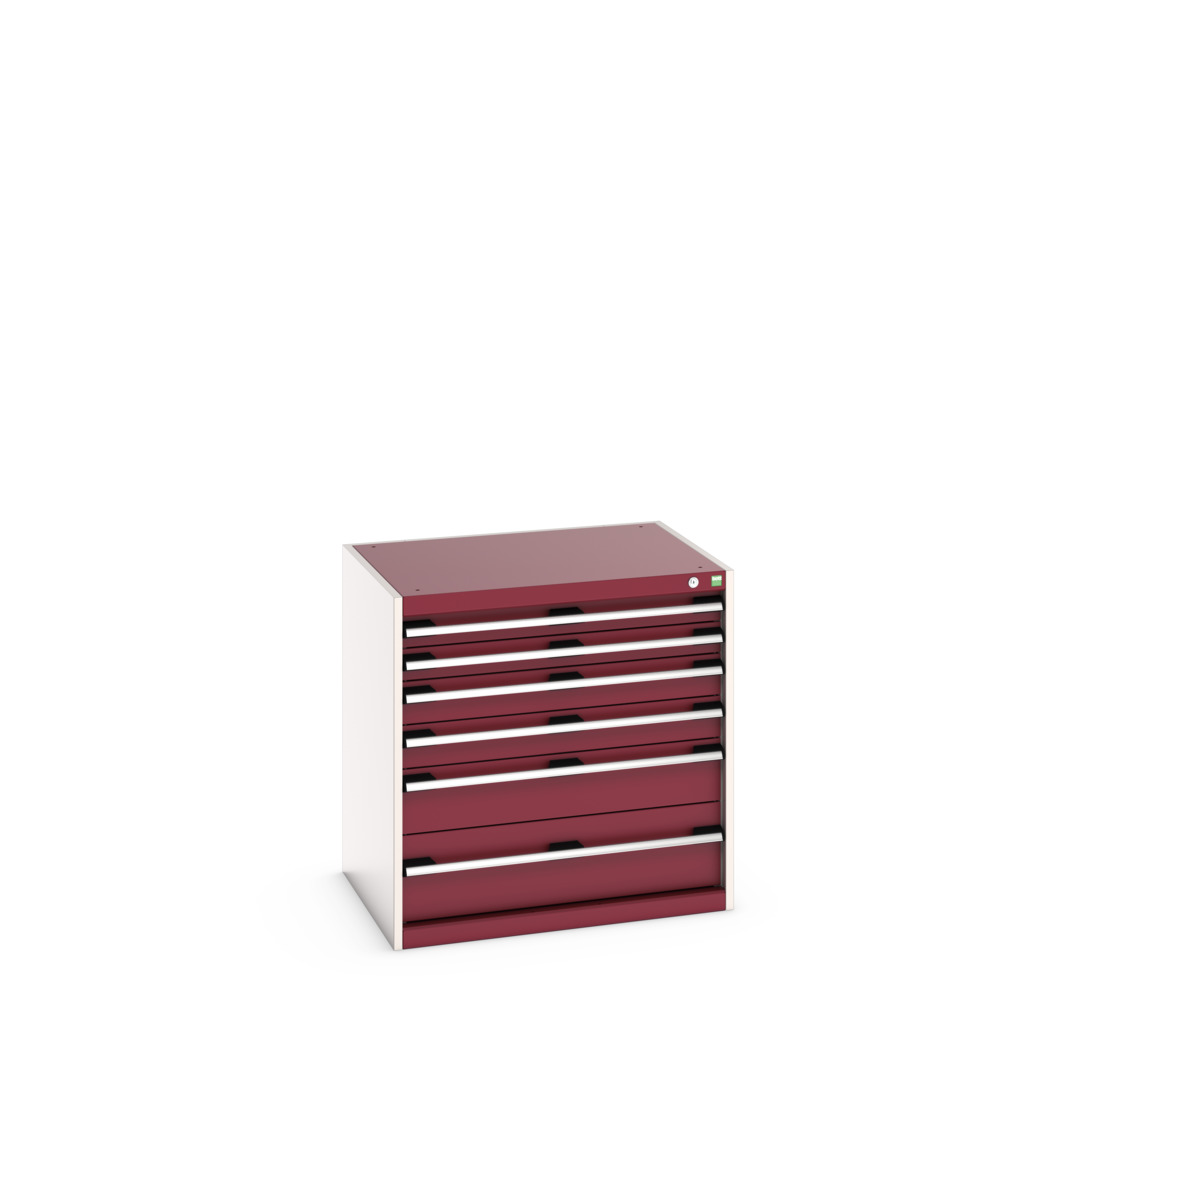 40020129.24V - cubio drawer cabinet